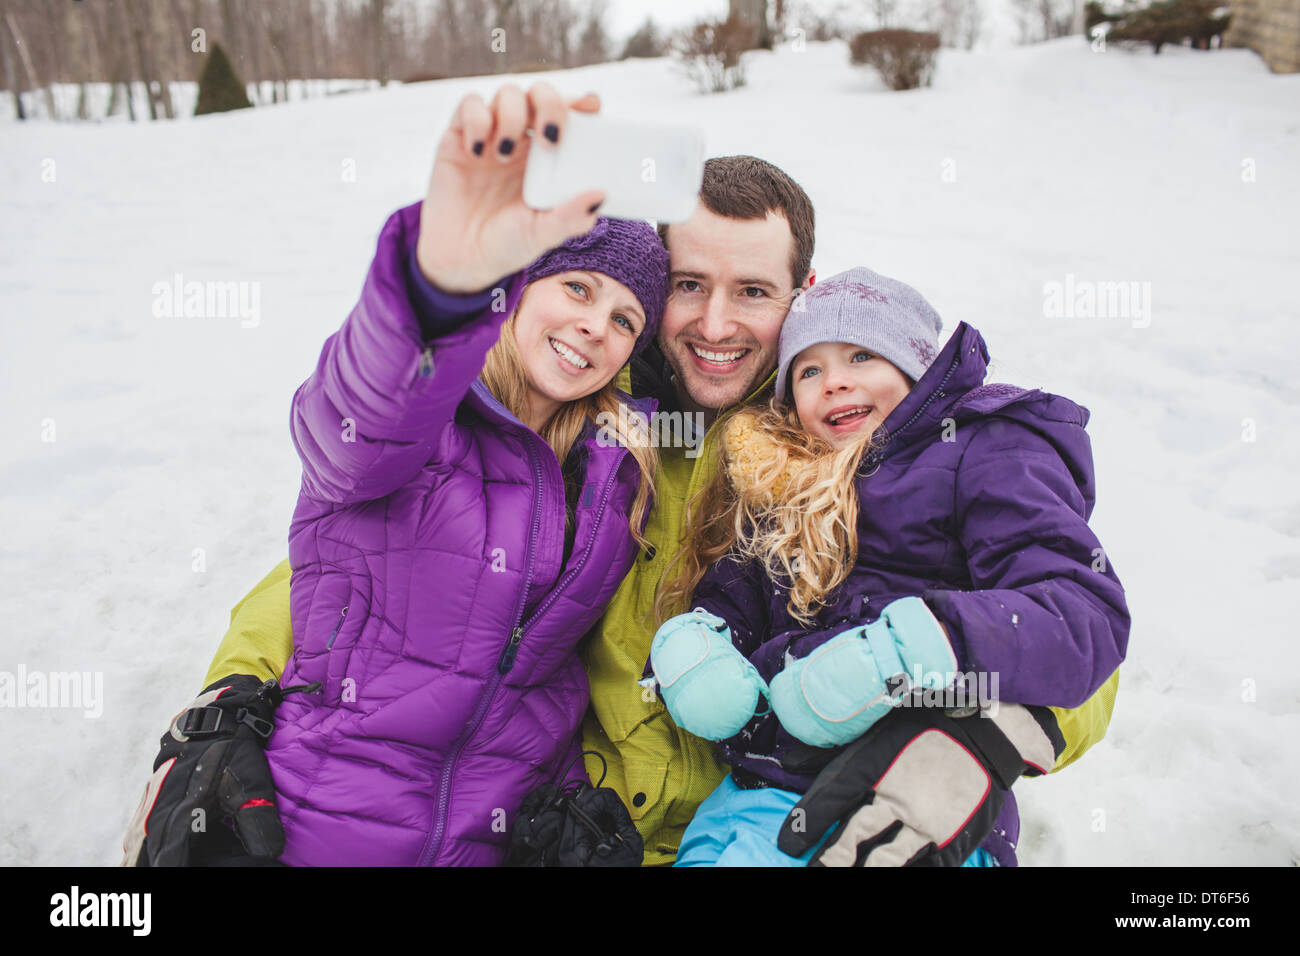 La mère et le père et sa fille portrait de famille prise avec un téléphone mobile Banque D'Images